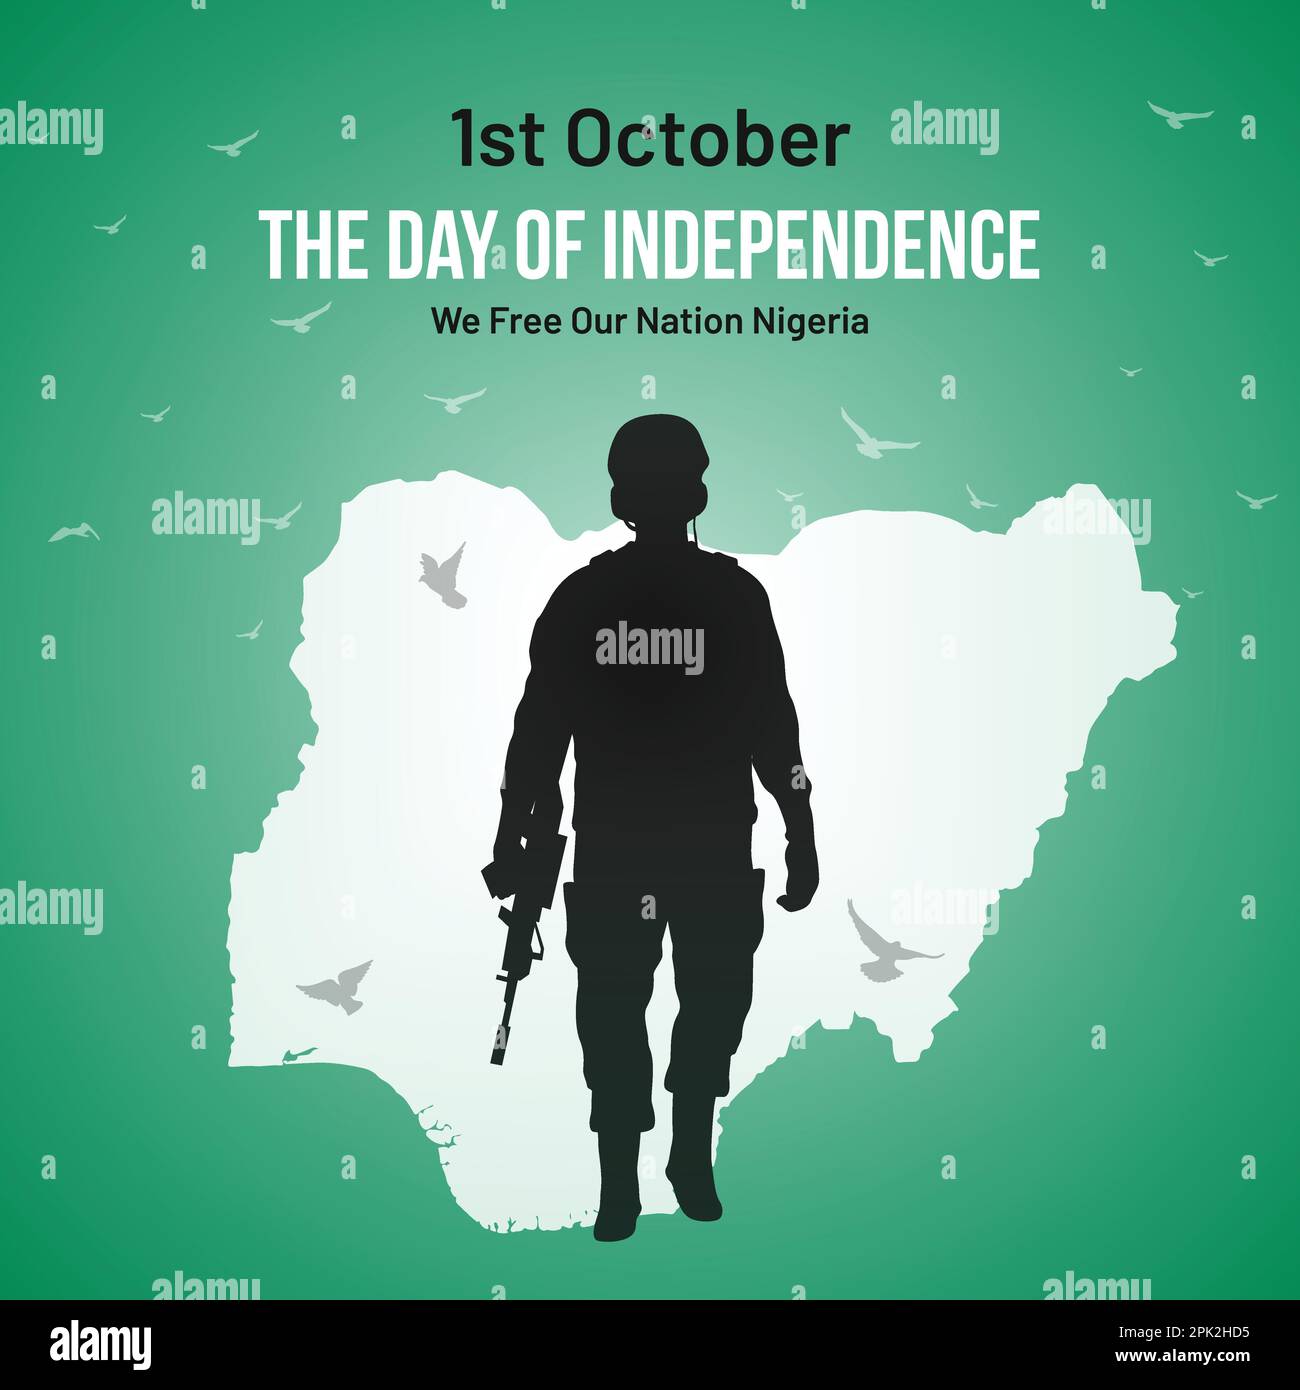 Post sui social media del giorno dell'indipendenza della Nigeria, biglietto d'auguri, disegno illustrativo vettoriale. 1° ottobre Festa Nazionale nigeriana. Illustrazione Vettoriale